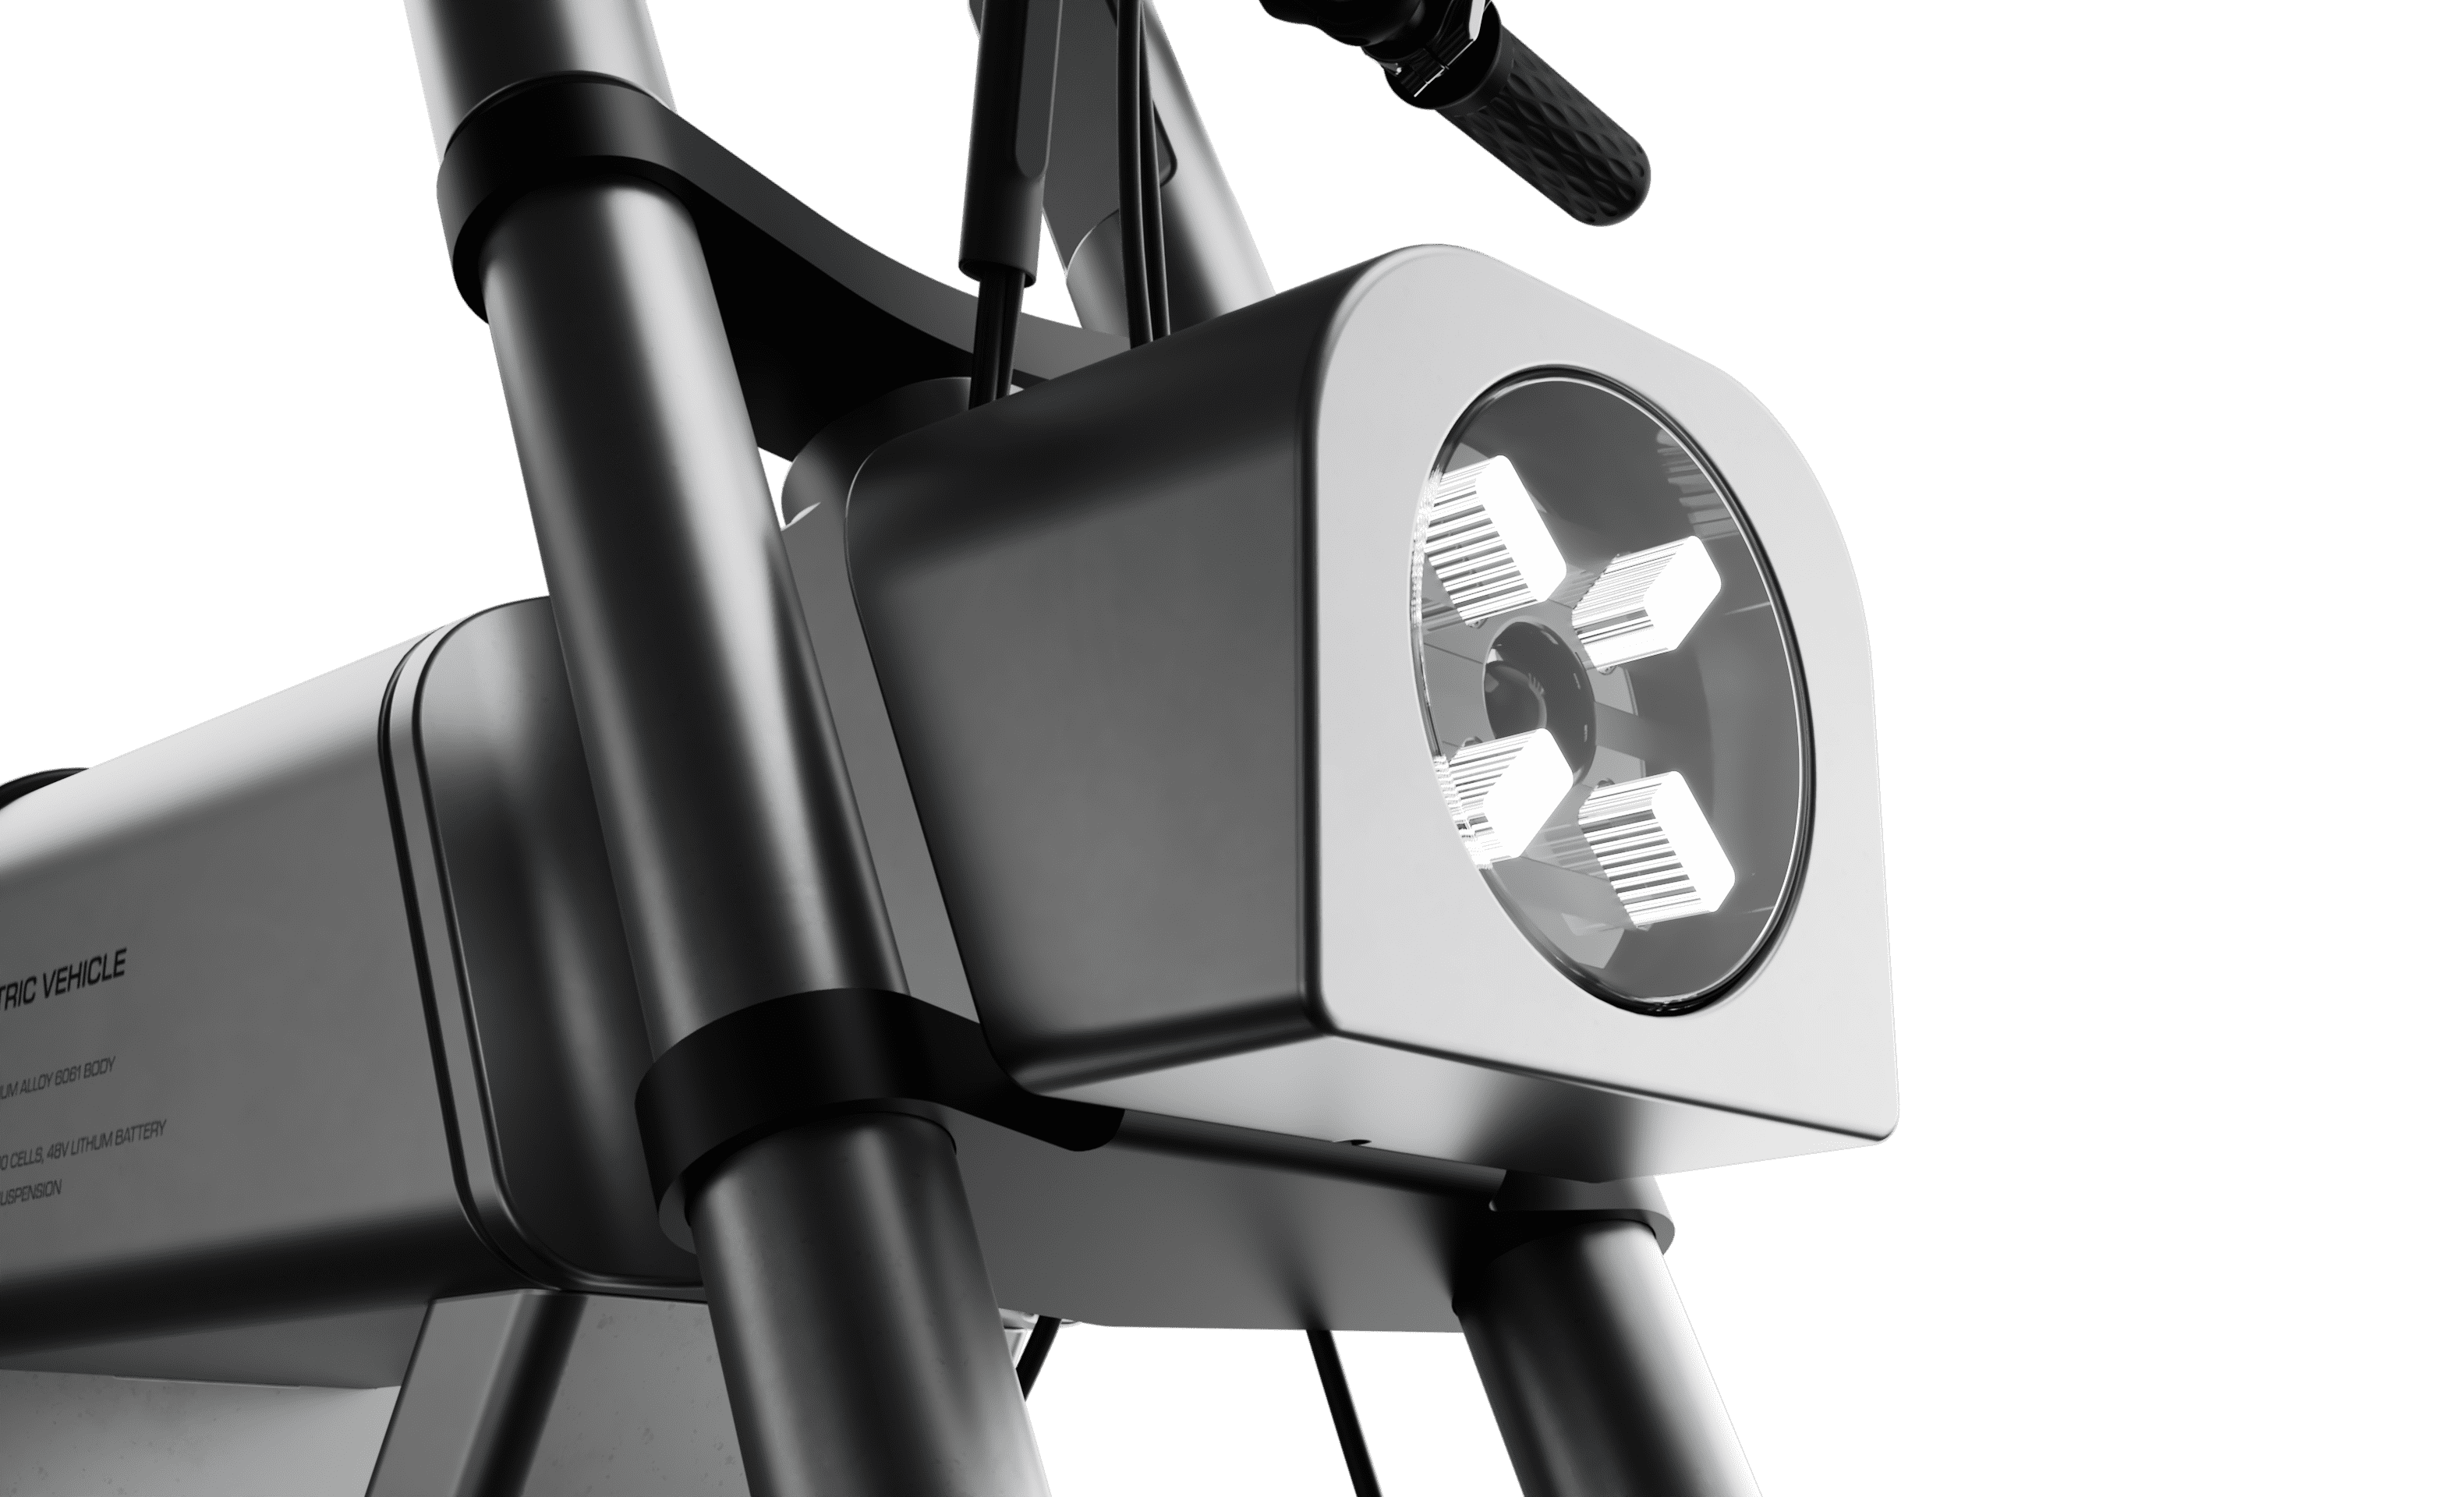 Async A1 Pro Electric Bike